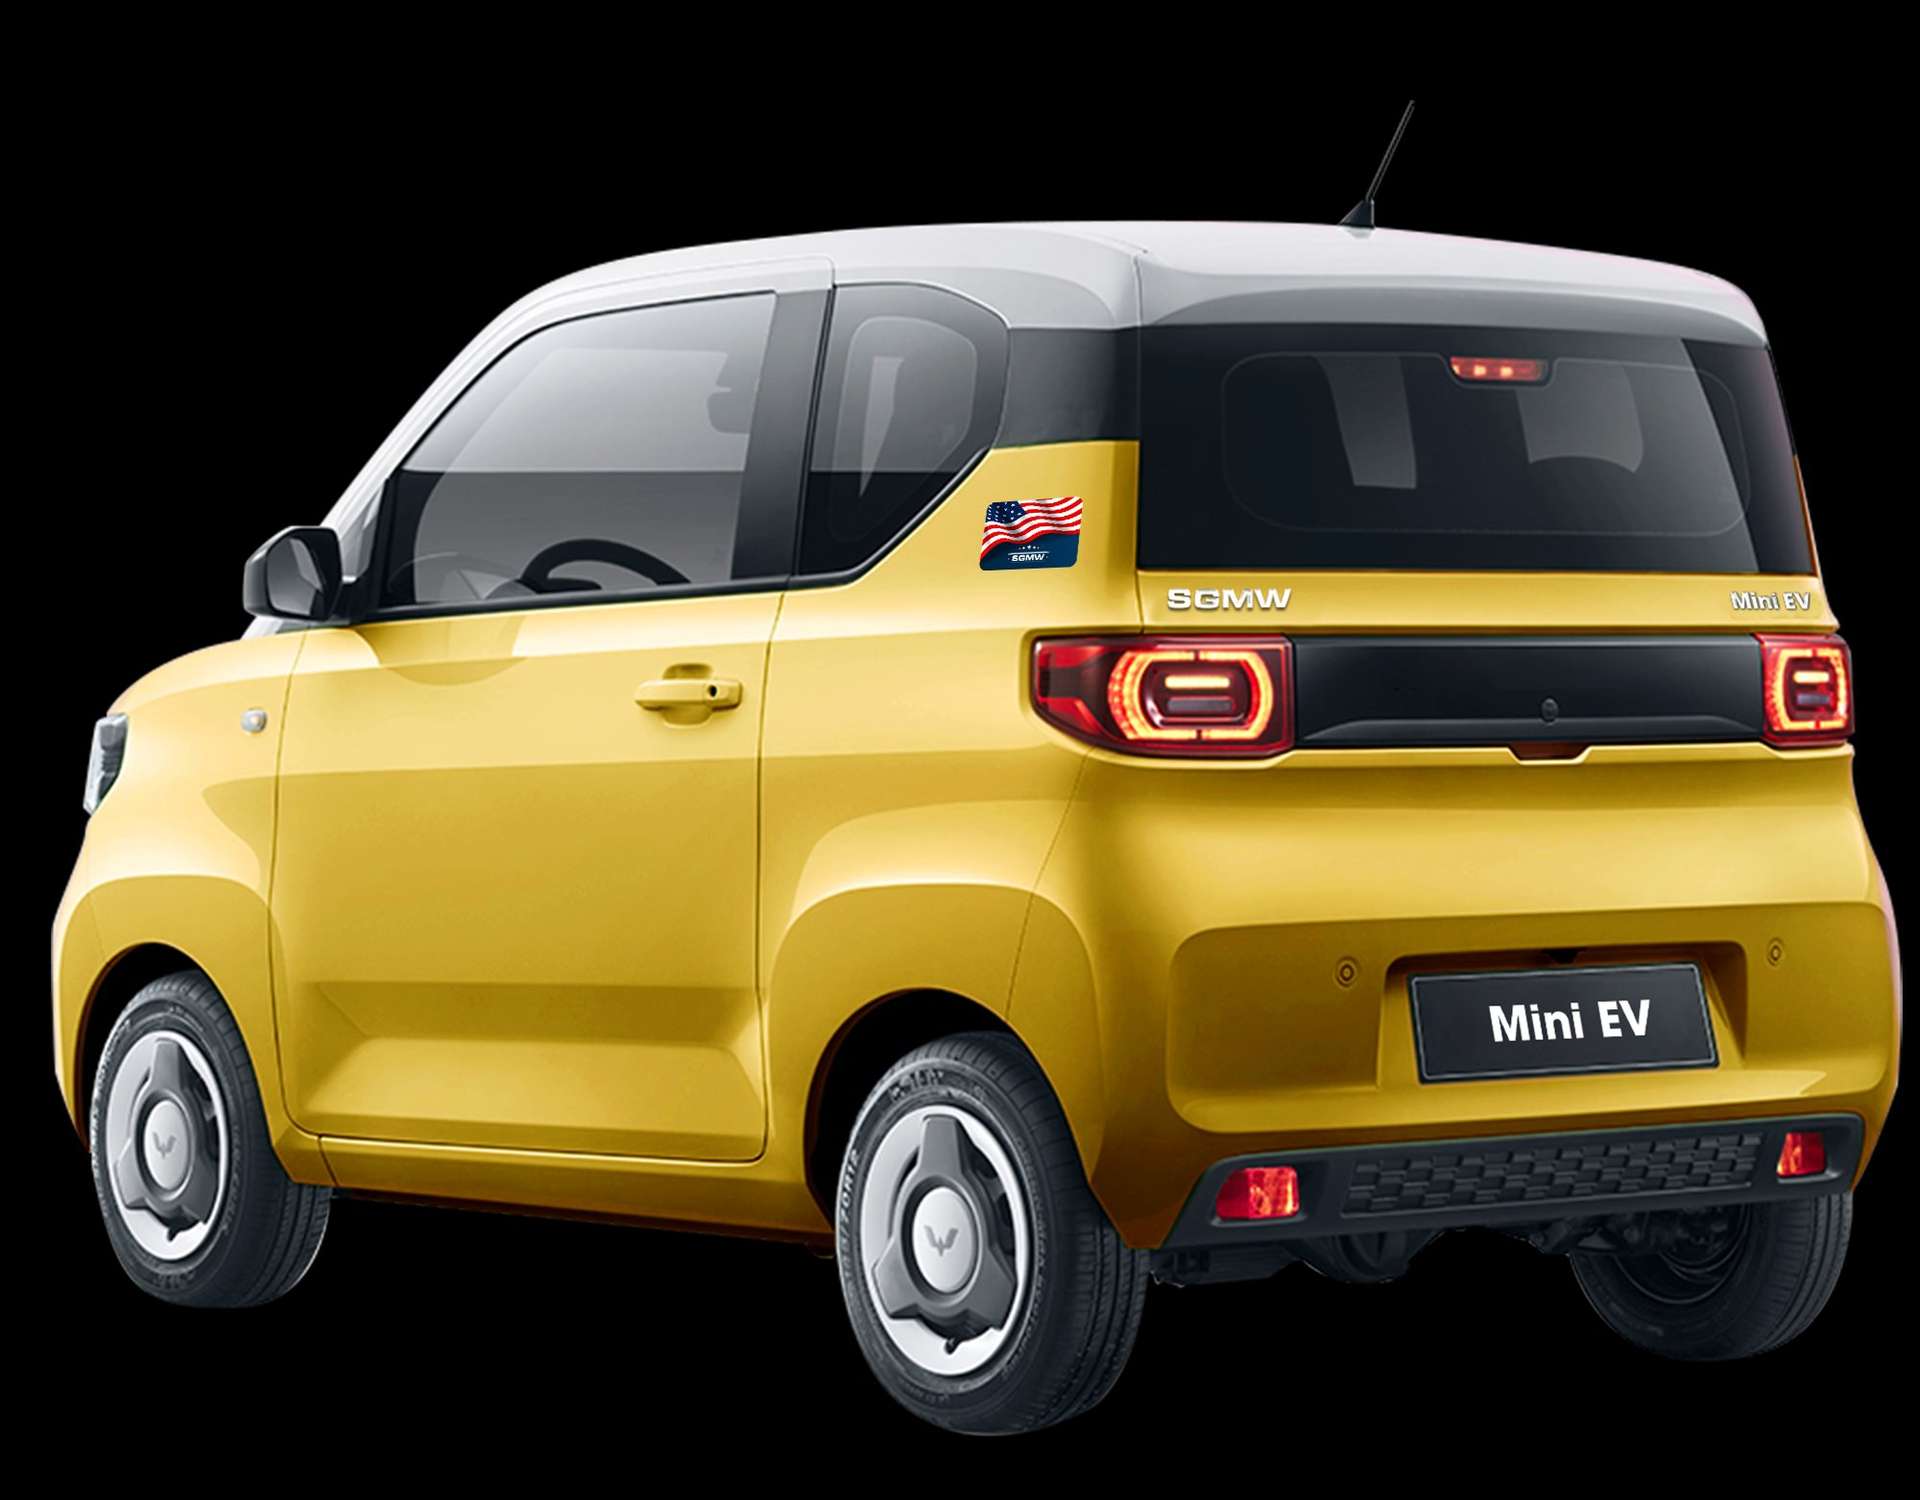 Ô tô điện mini rẻ nhất Việt Nam thông báo thay đổi ngoại thất – nhìn thay đổi mới thấy bất ngờ - Ảnh 1.